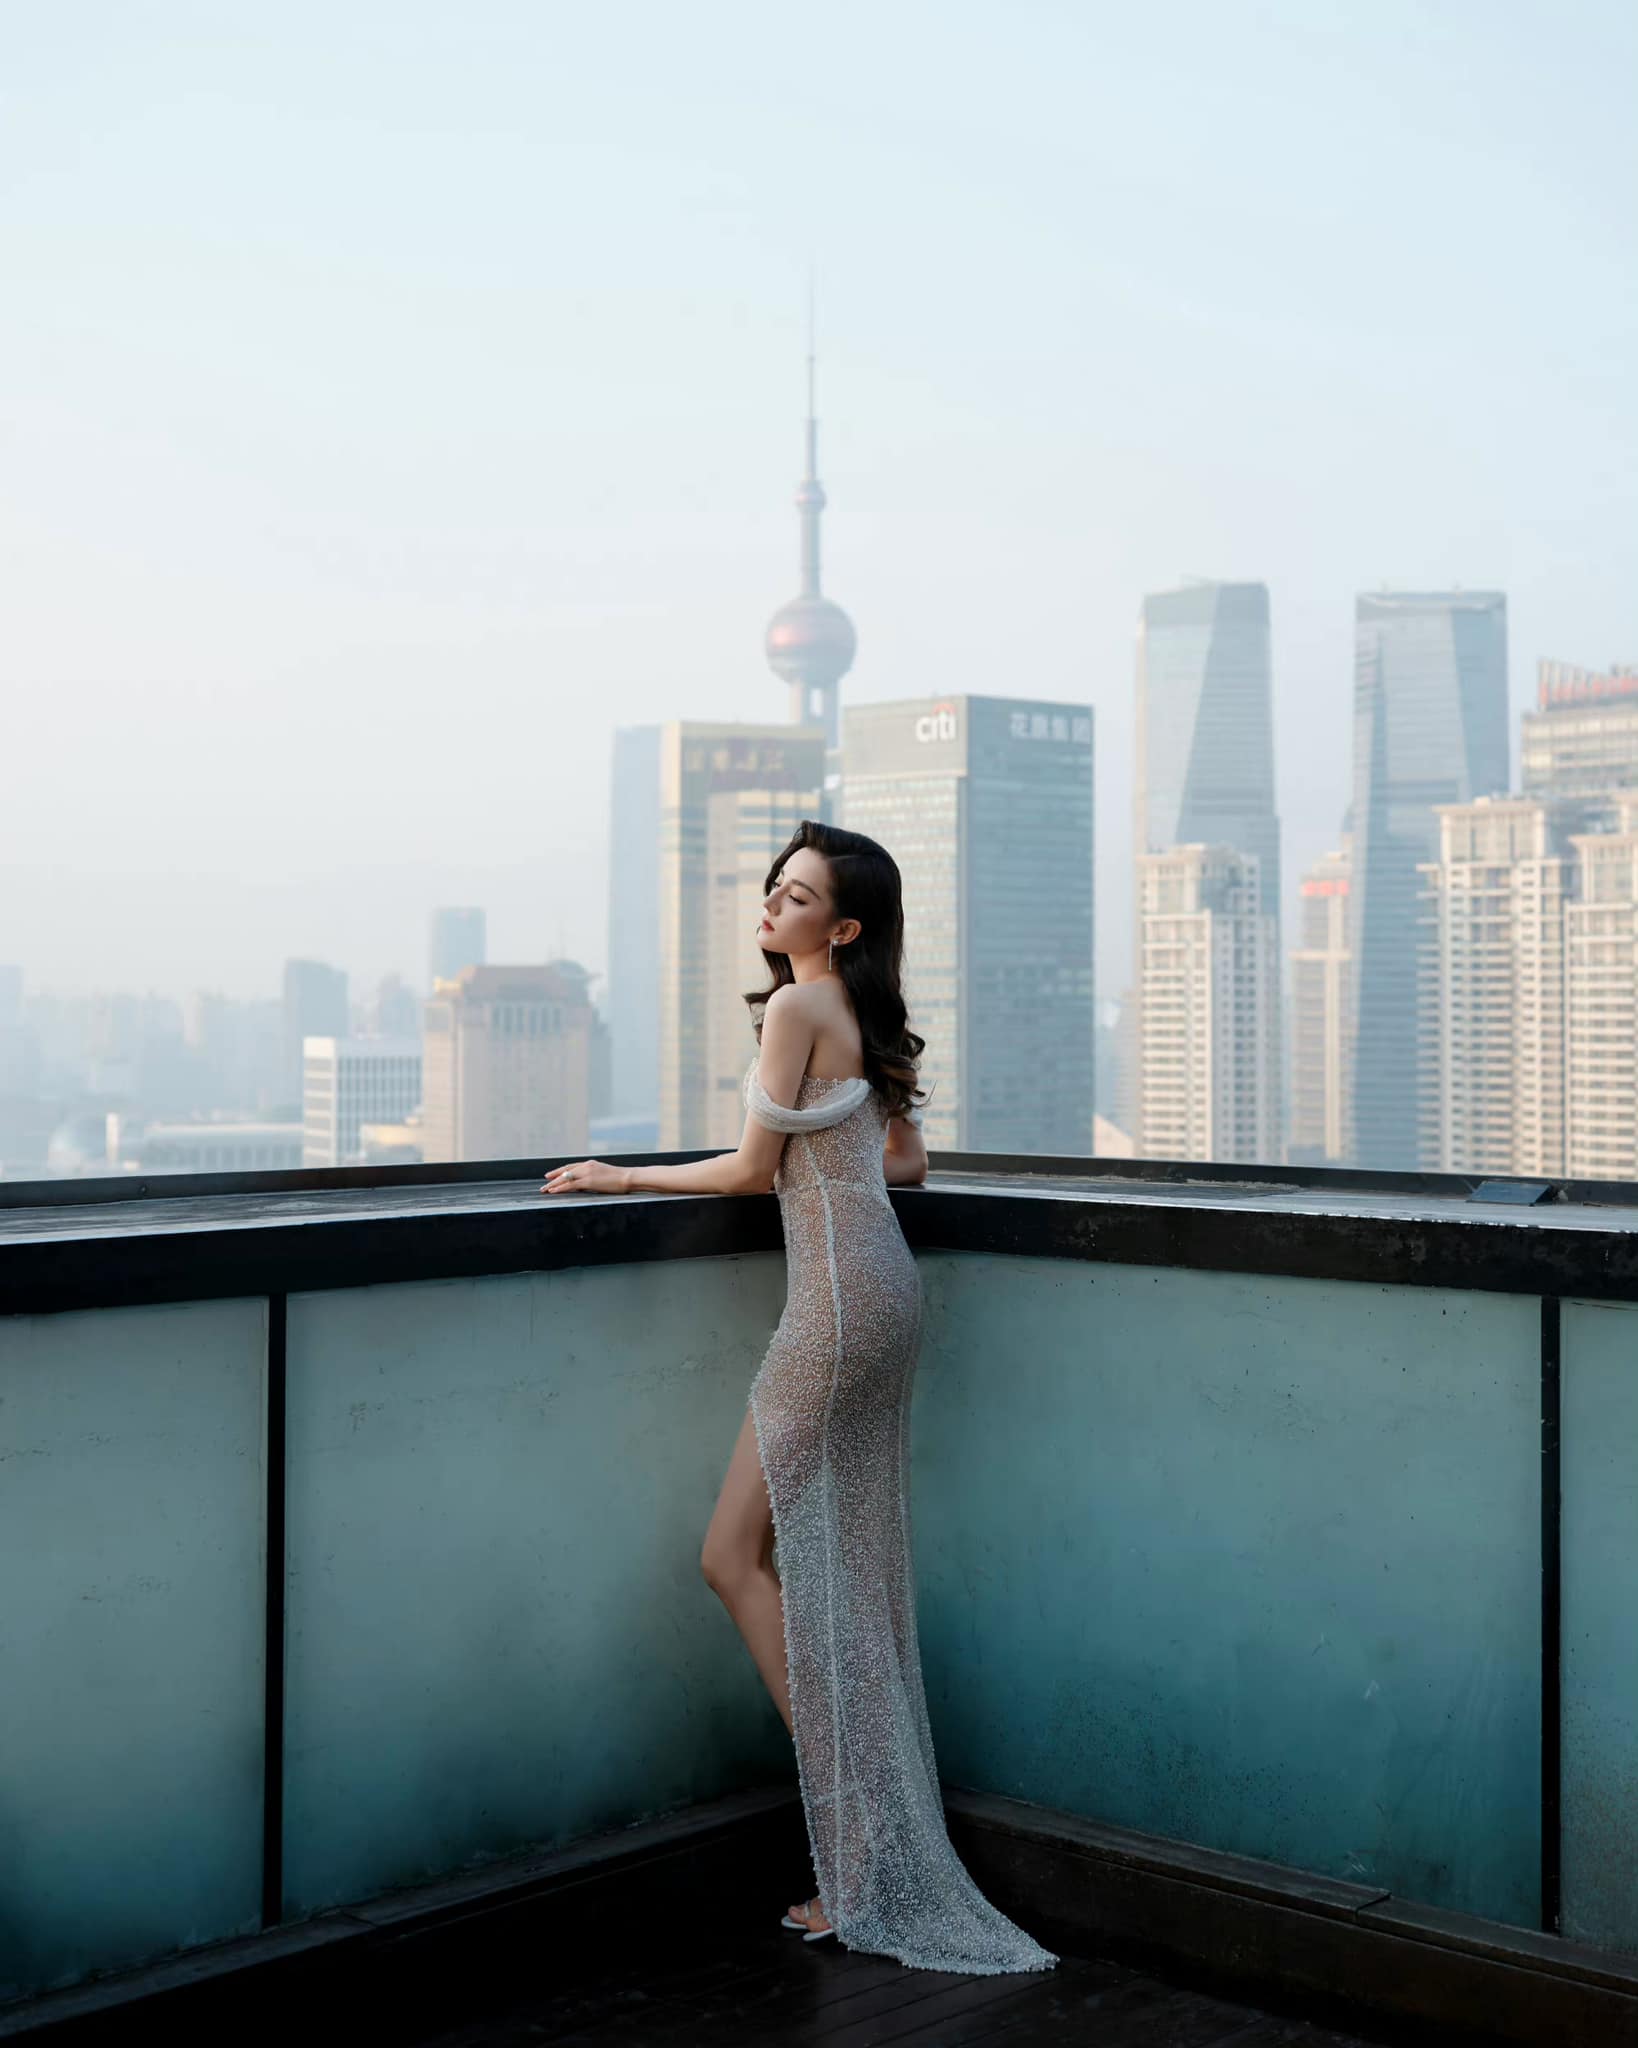 Ham hố gây chú ý với quan khách, mỹ nhân Trung Quốc bị cắt sóng vì váy ảo ảnh - 5